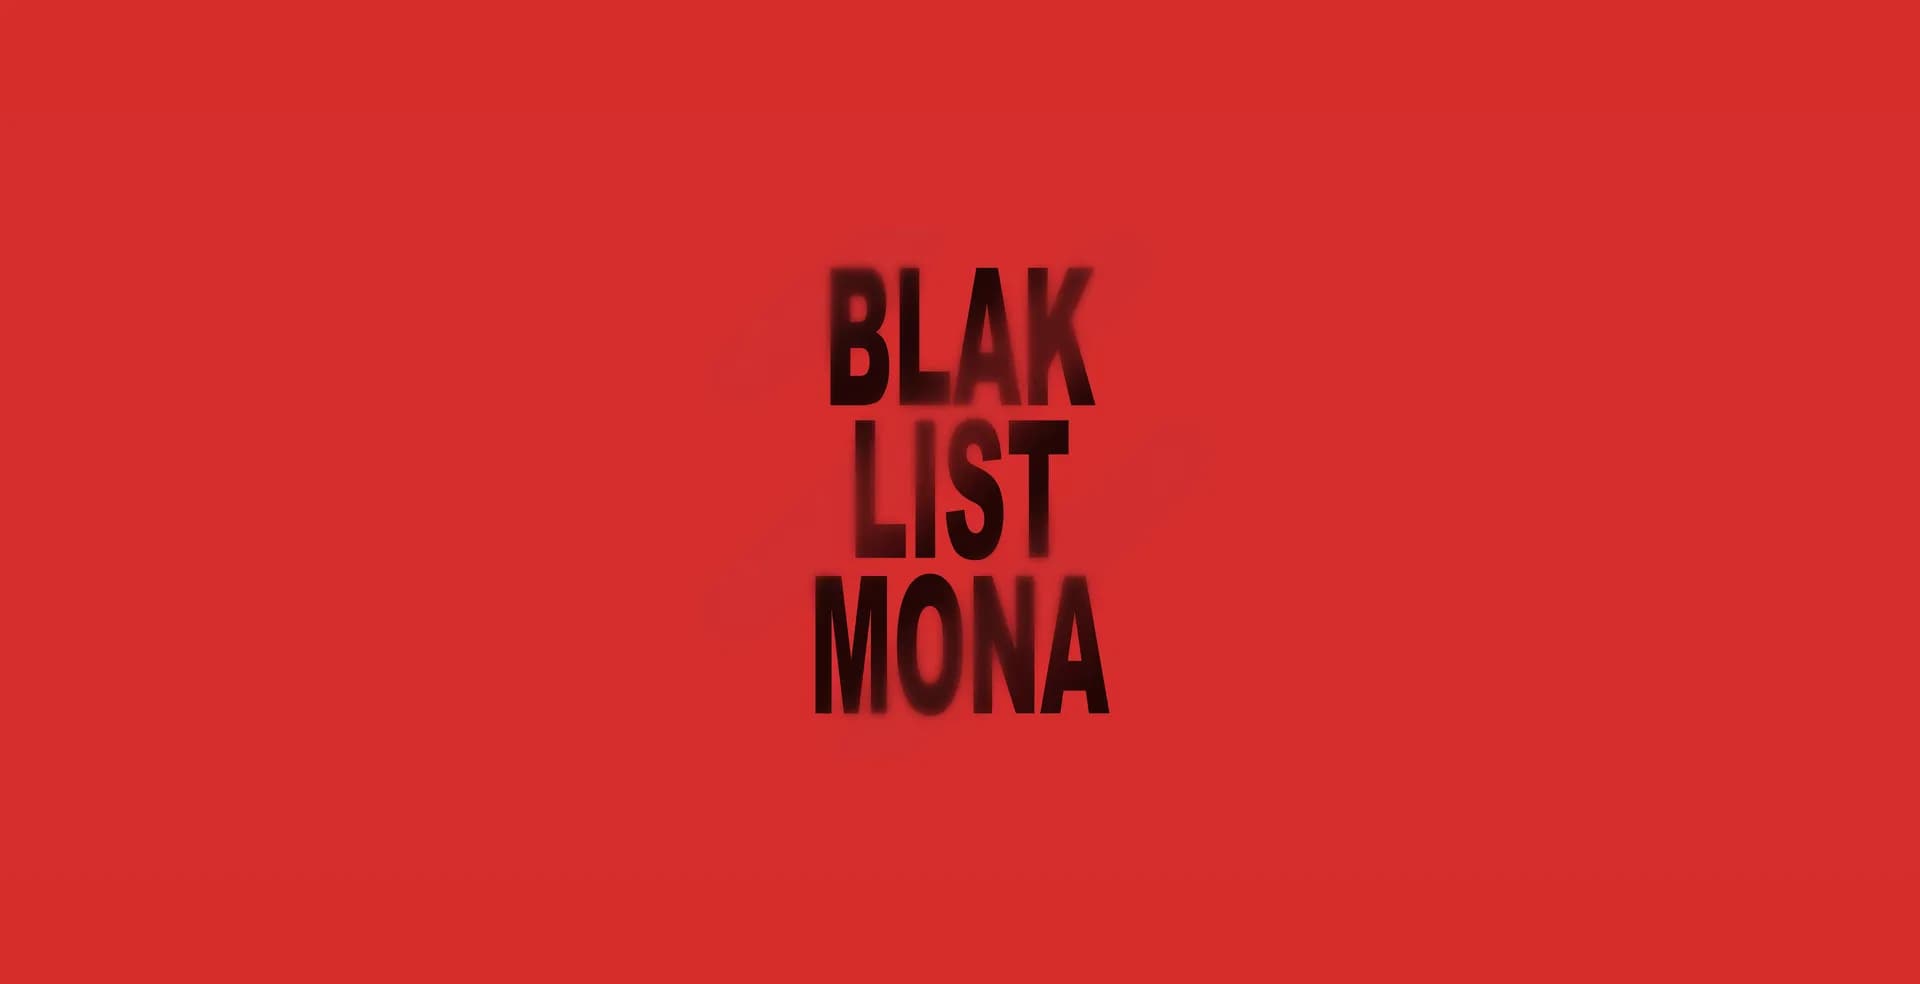 BLAK LIST MONA, Courtesy of Blak List MONA.